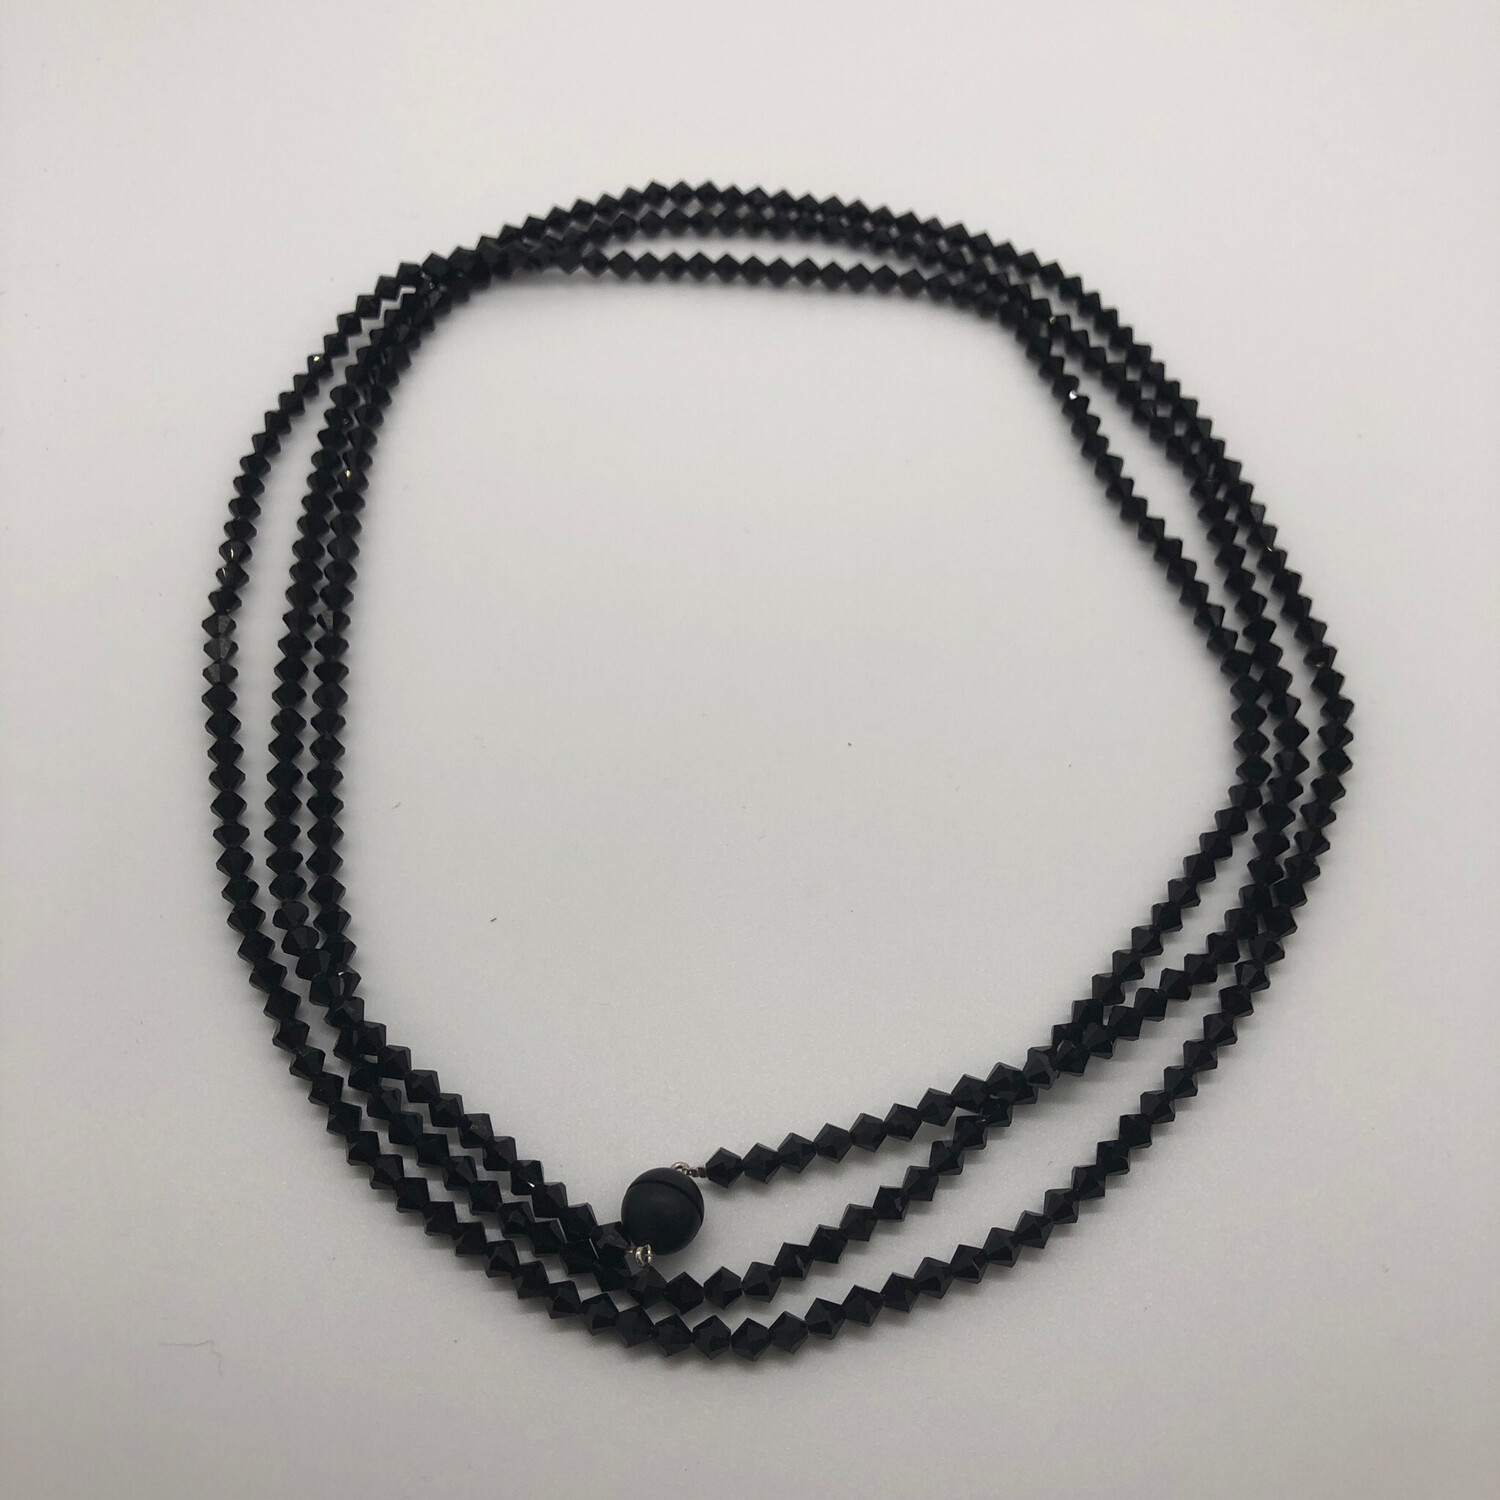 Halskette extralang schwarz mit facettierten Swarovskikristallen - mit Anhänger zu ergänzen